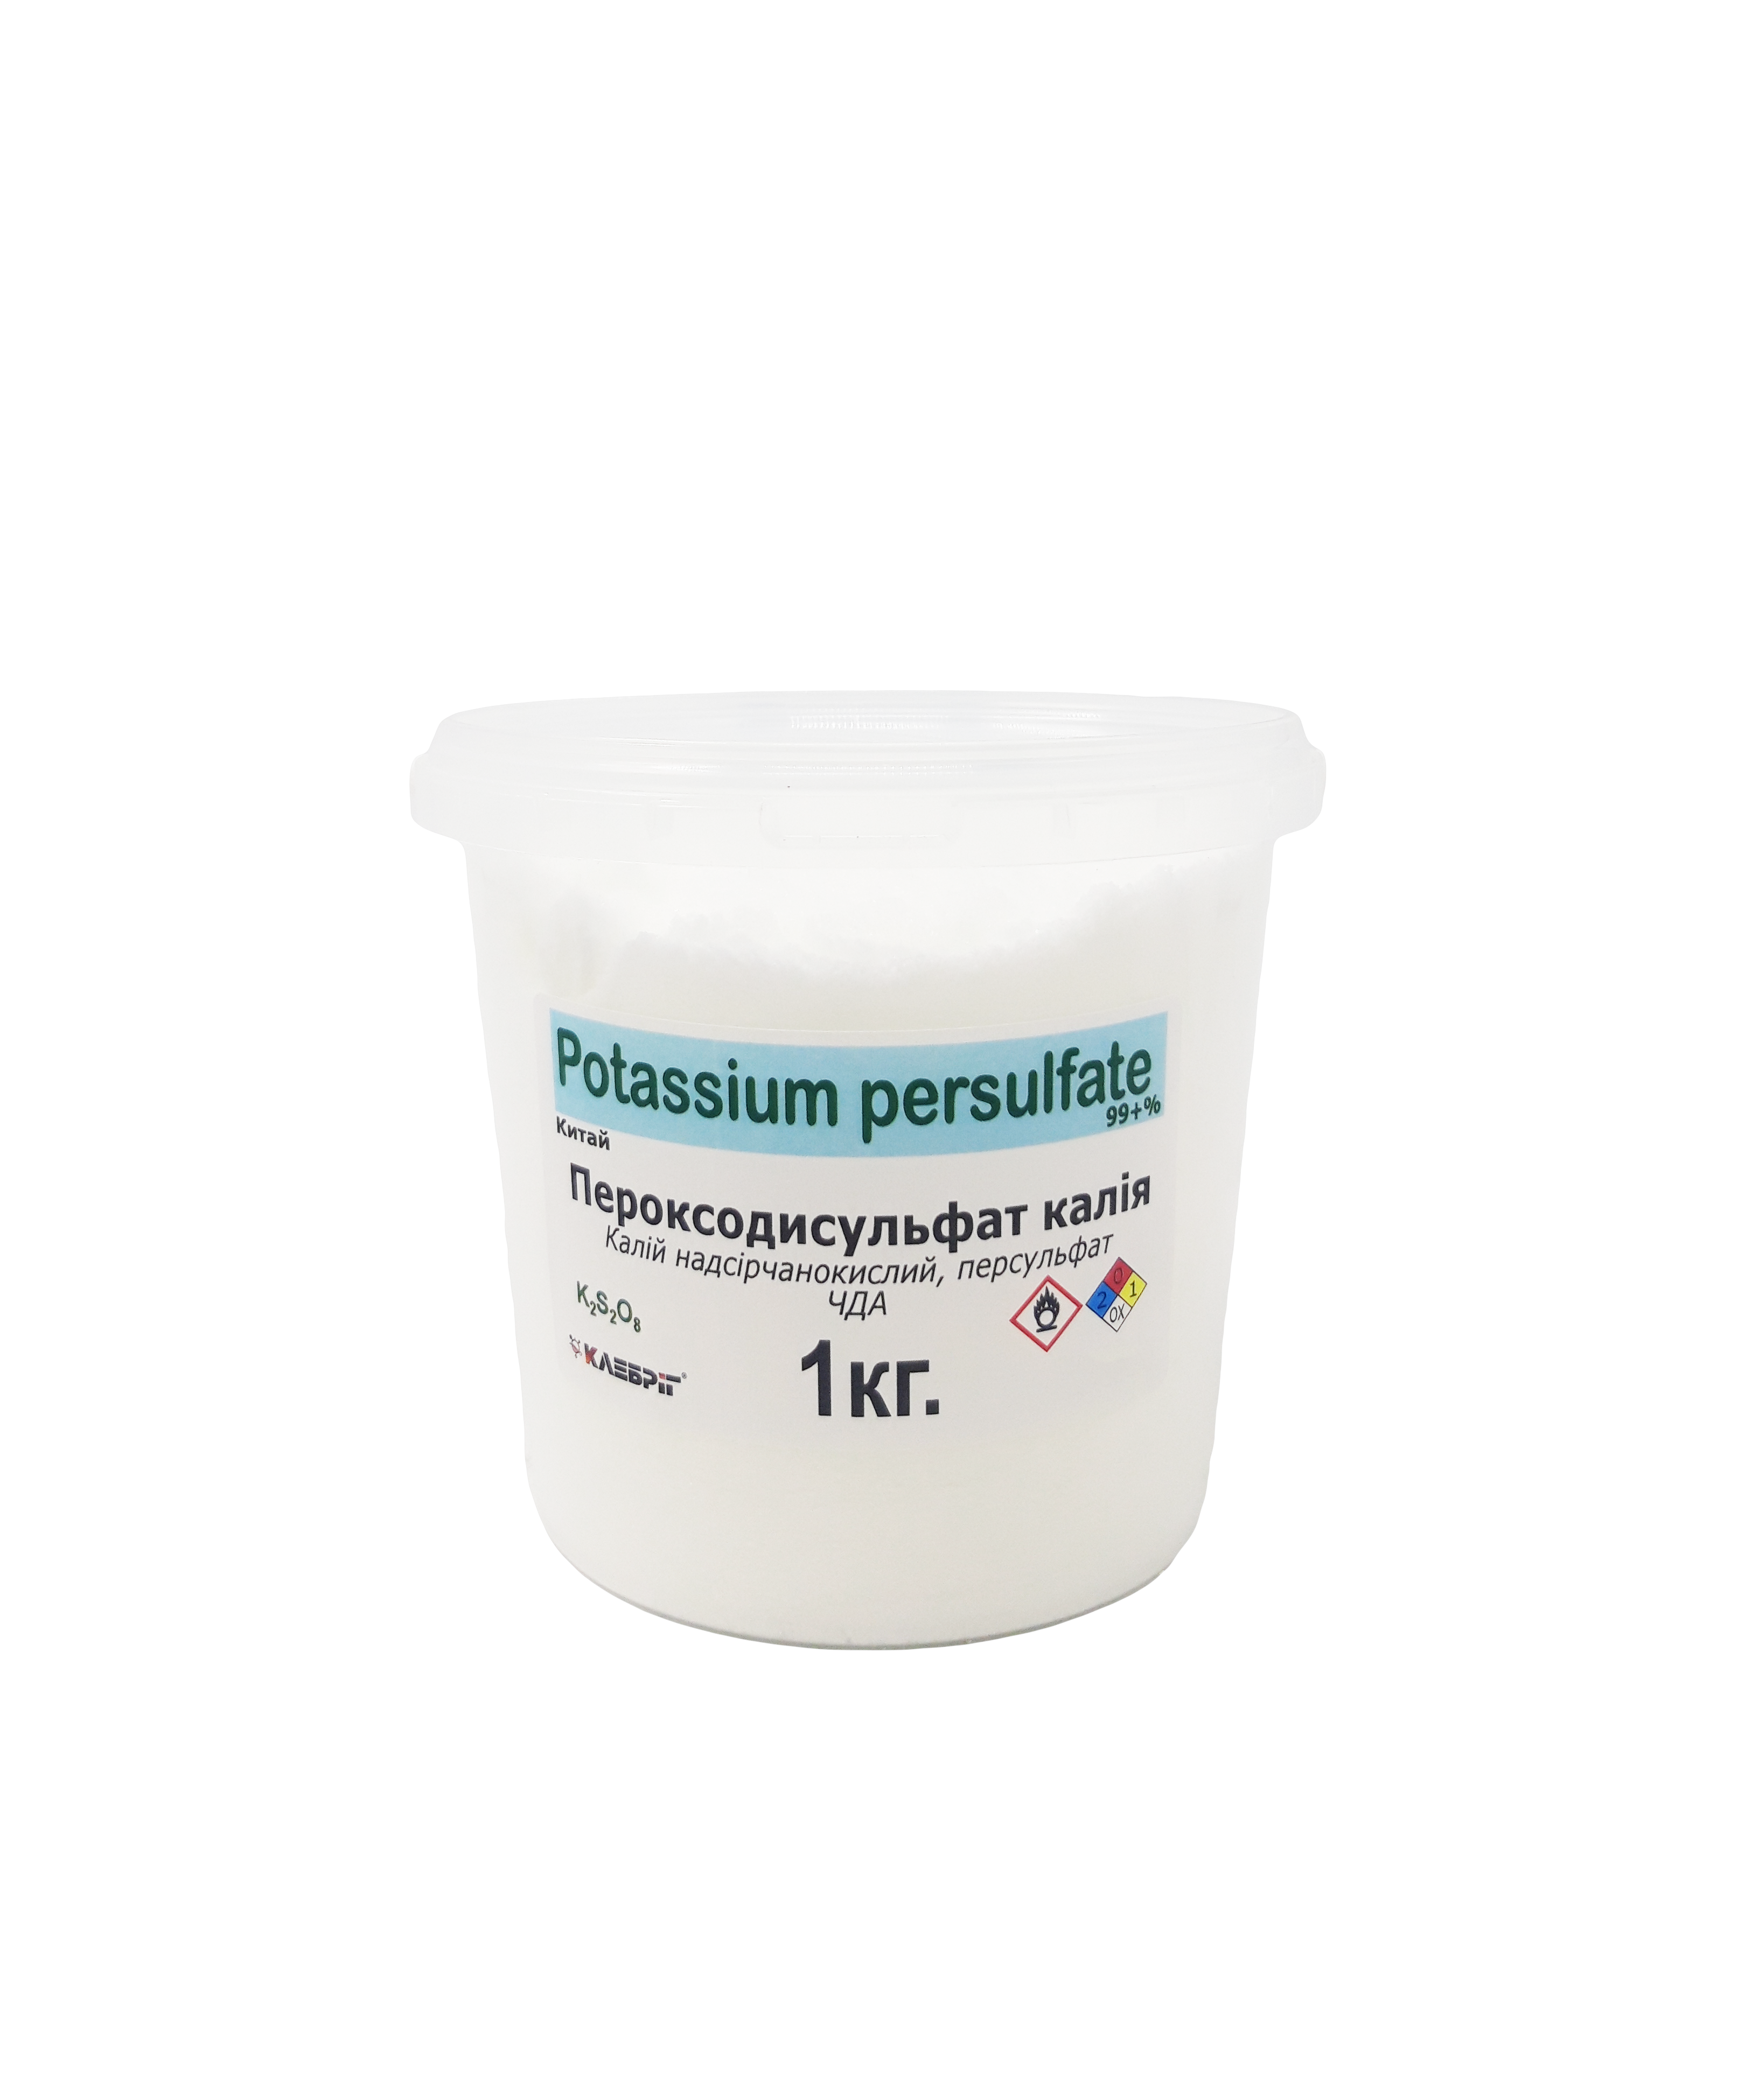 Пероксодисульфат калію харчовий Klebrig відро 1 кг (ЧДА КПСФ-В-1)